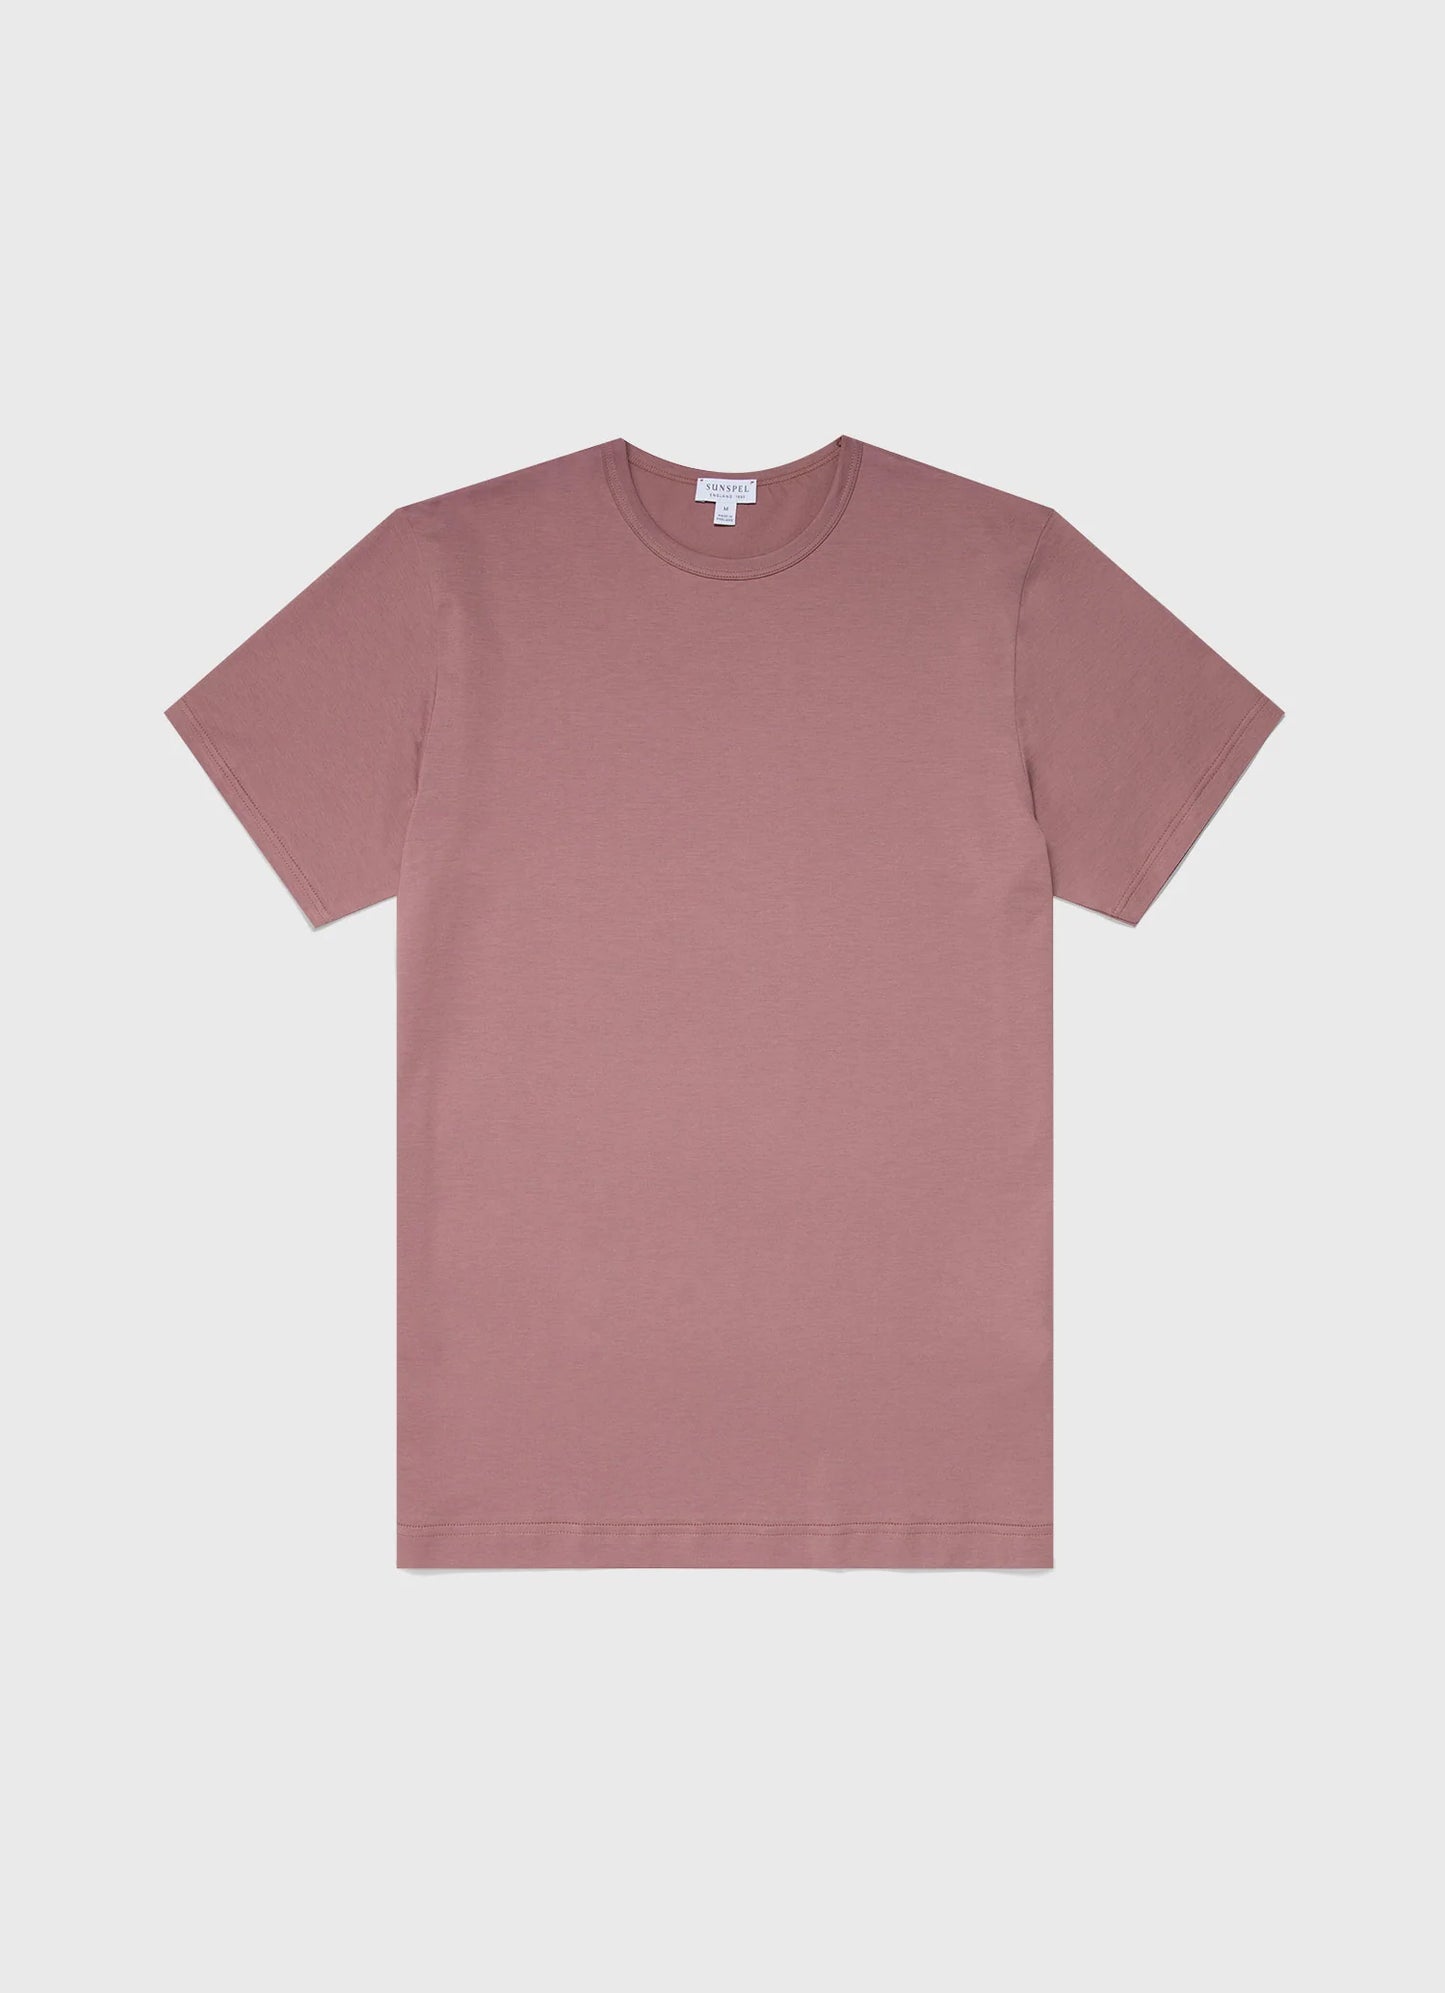 Vintage Pink Classic Cotton T-Shirt